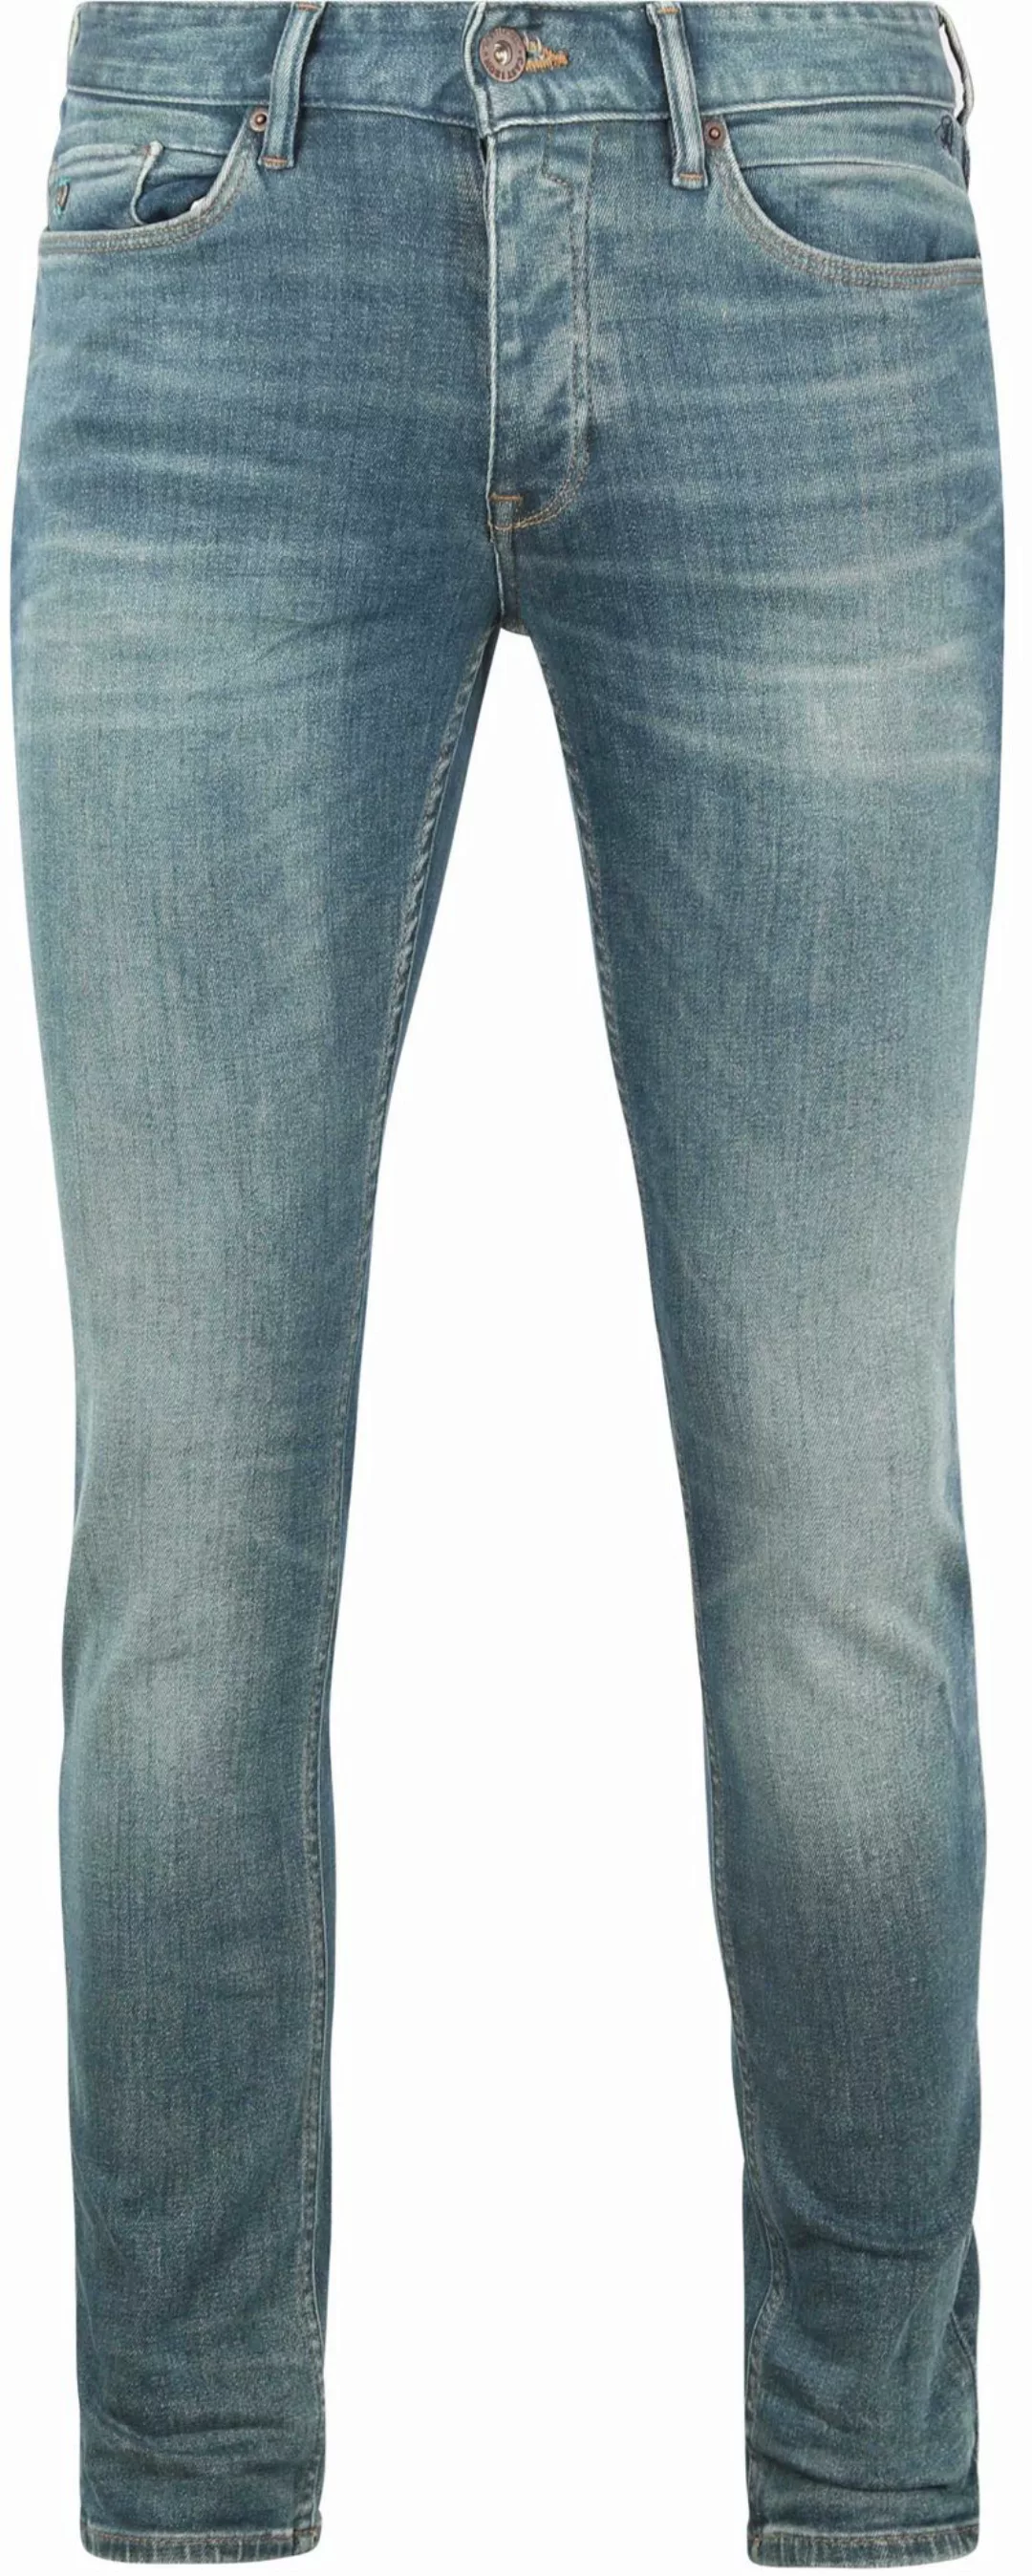 Cast Iron Riser Jeans Hellblau - Größe W 30 - L 34 günstig online kaufen